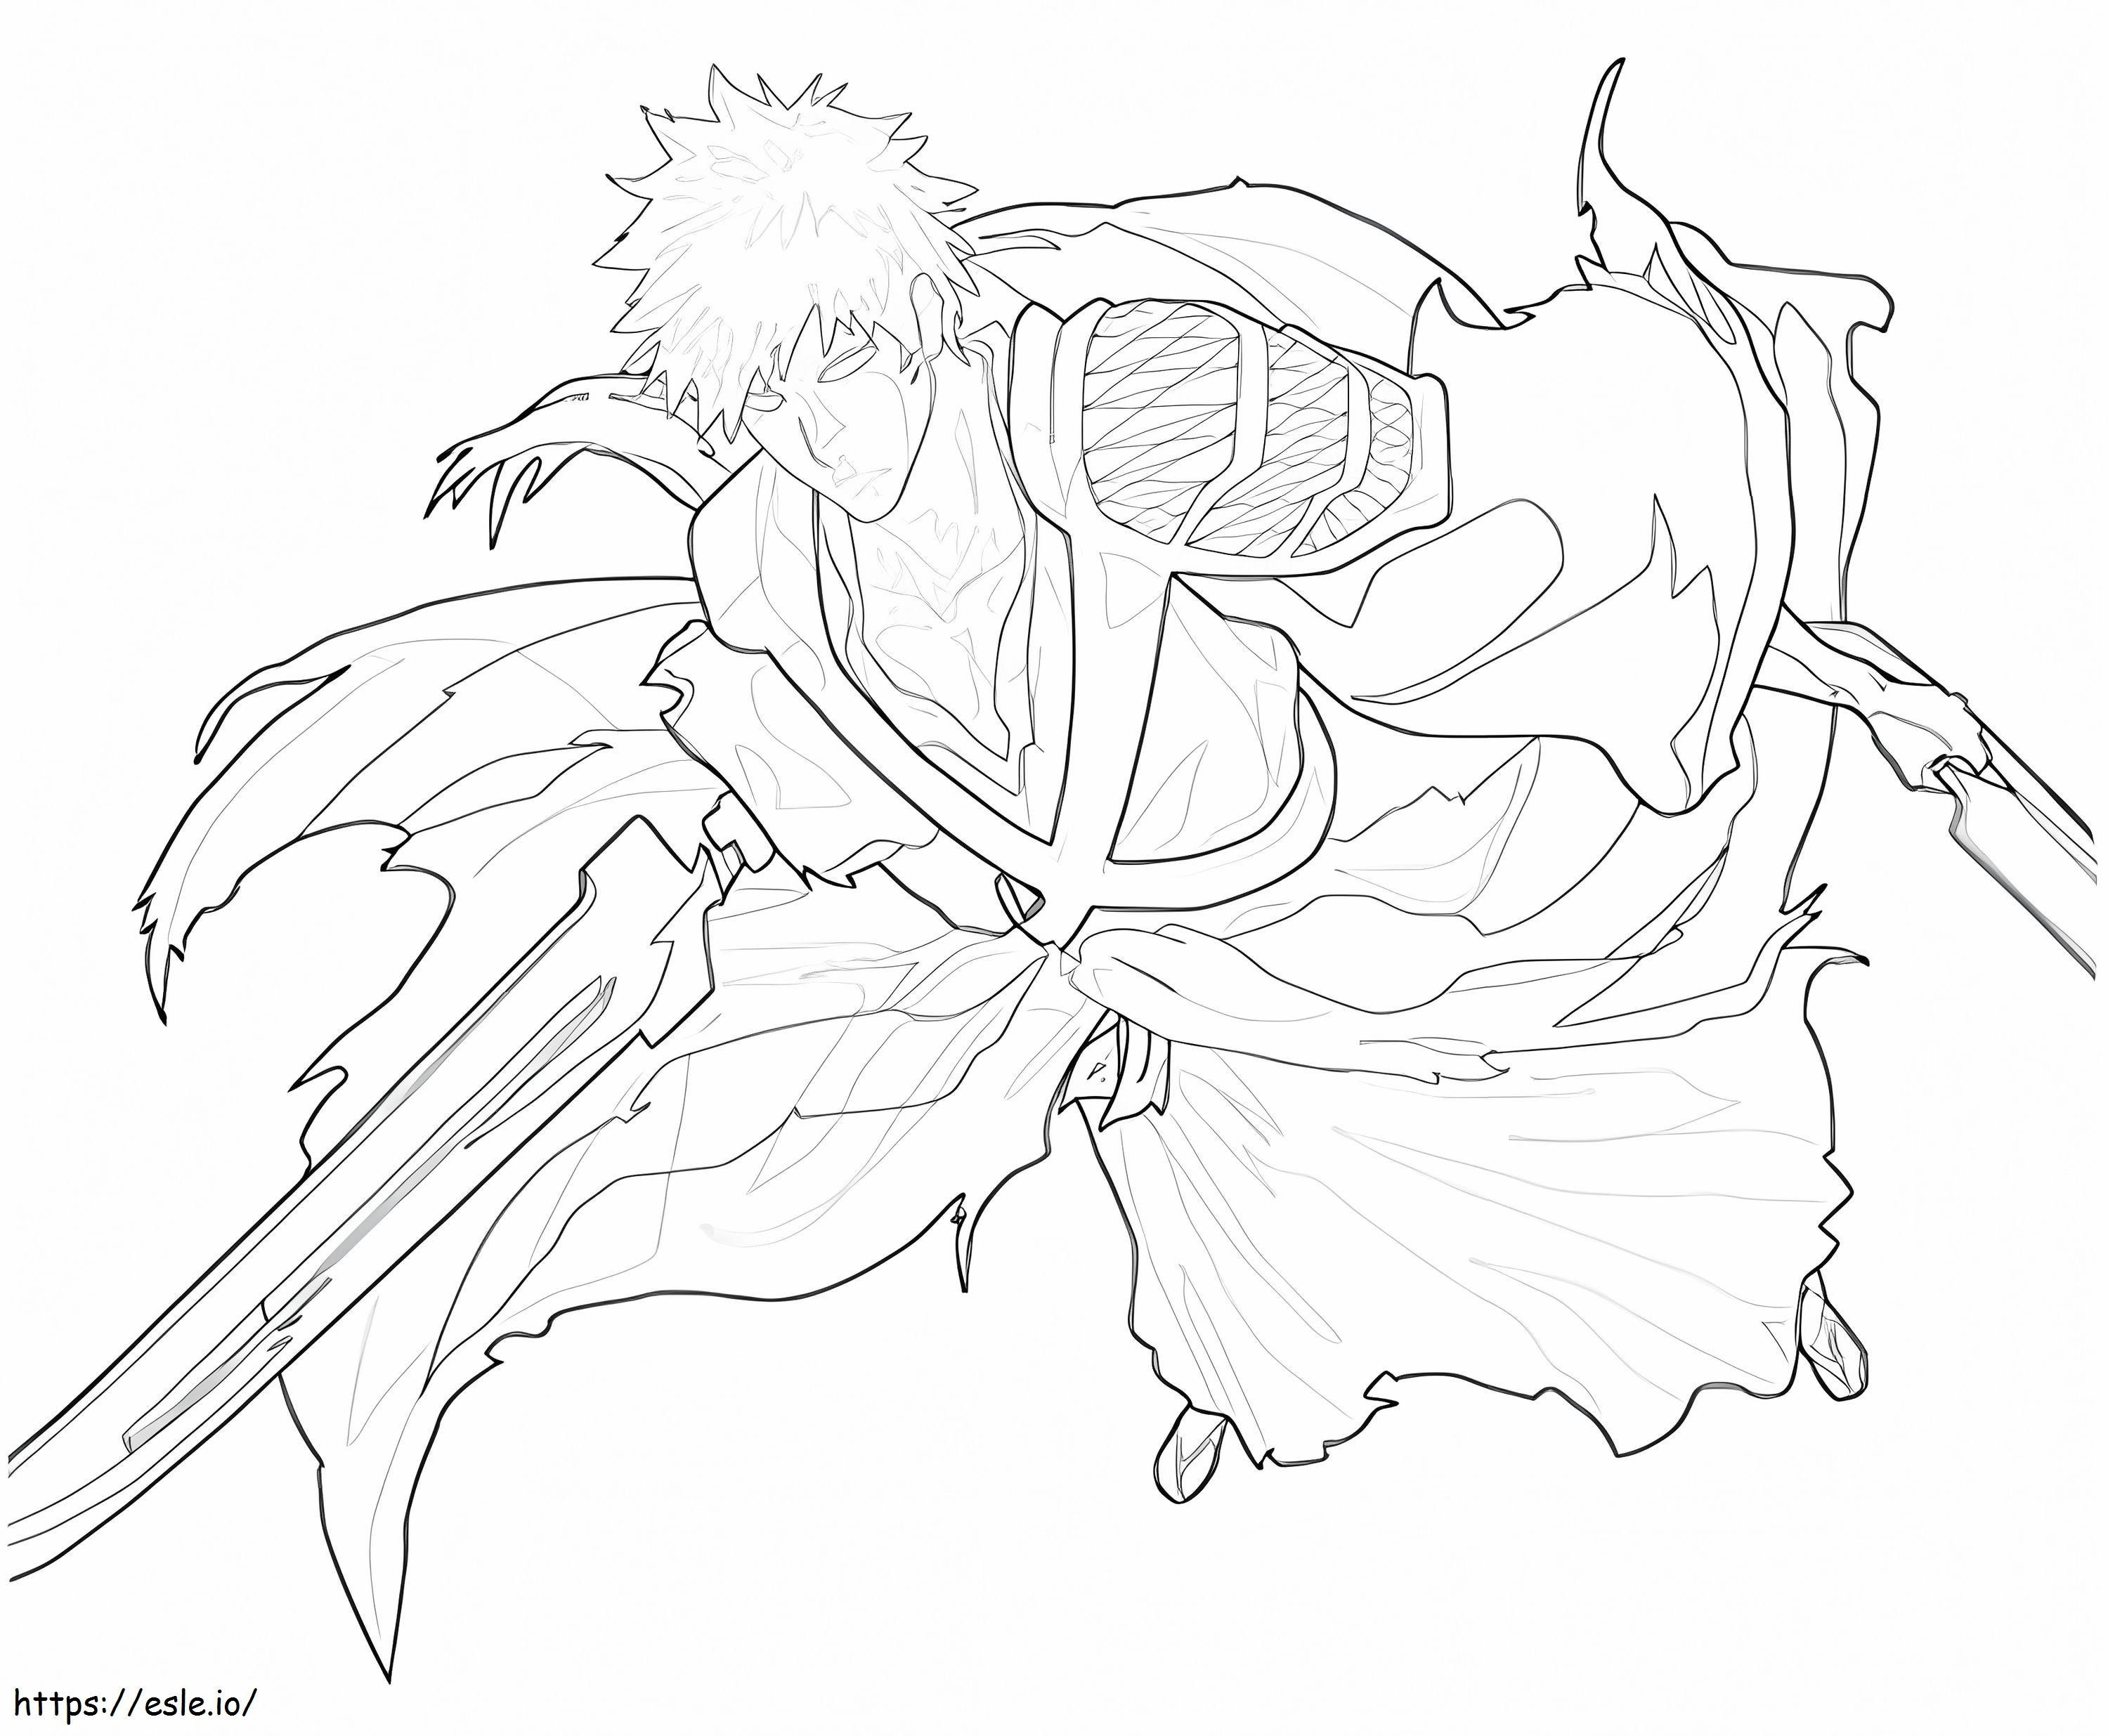 Ichigo Kurosaki'nin Dövüşü boyama